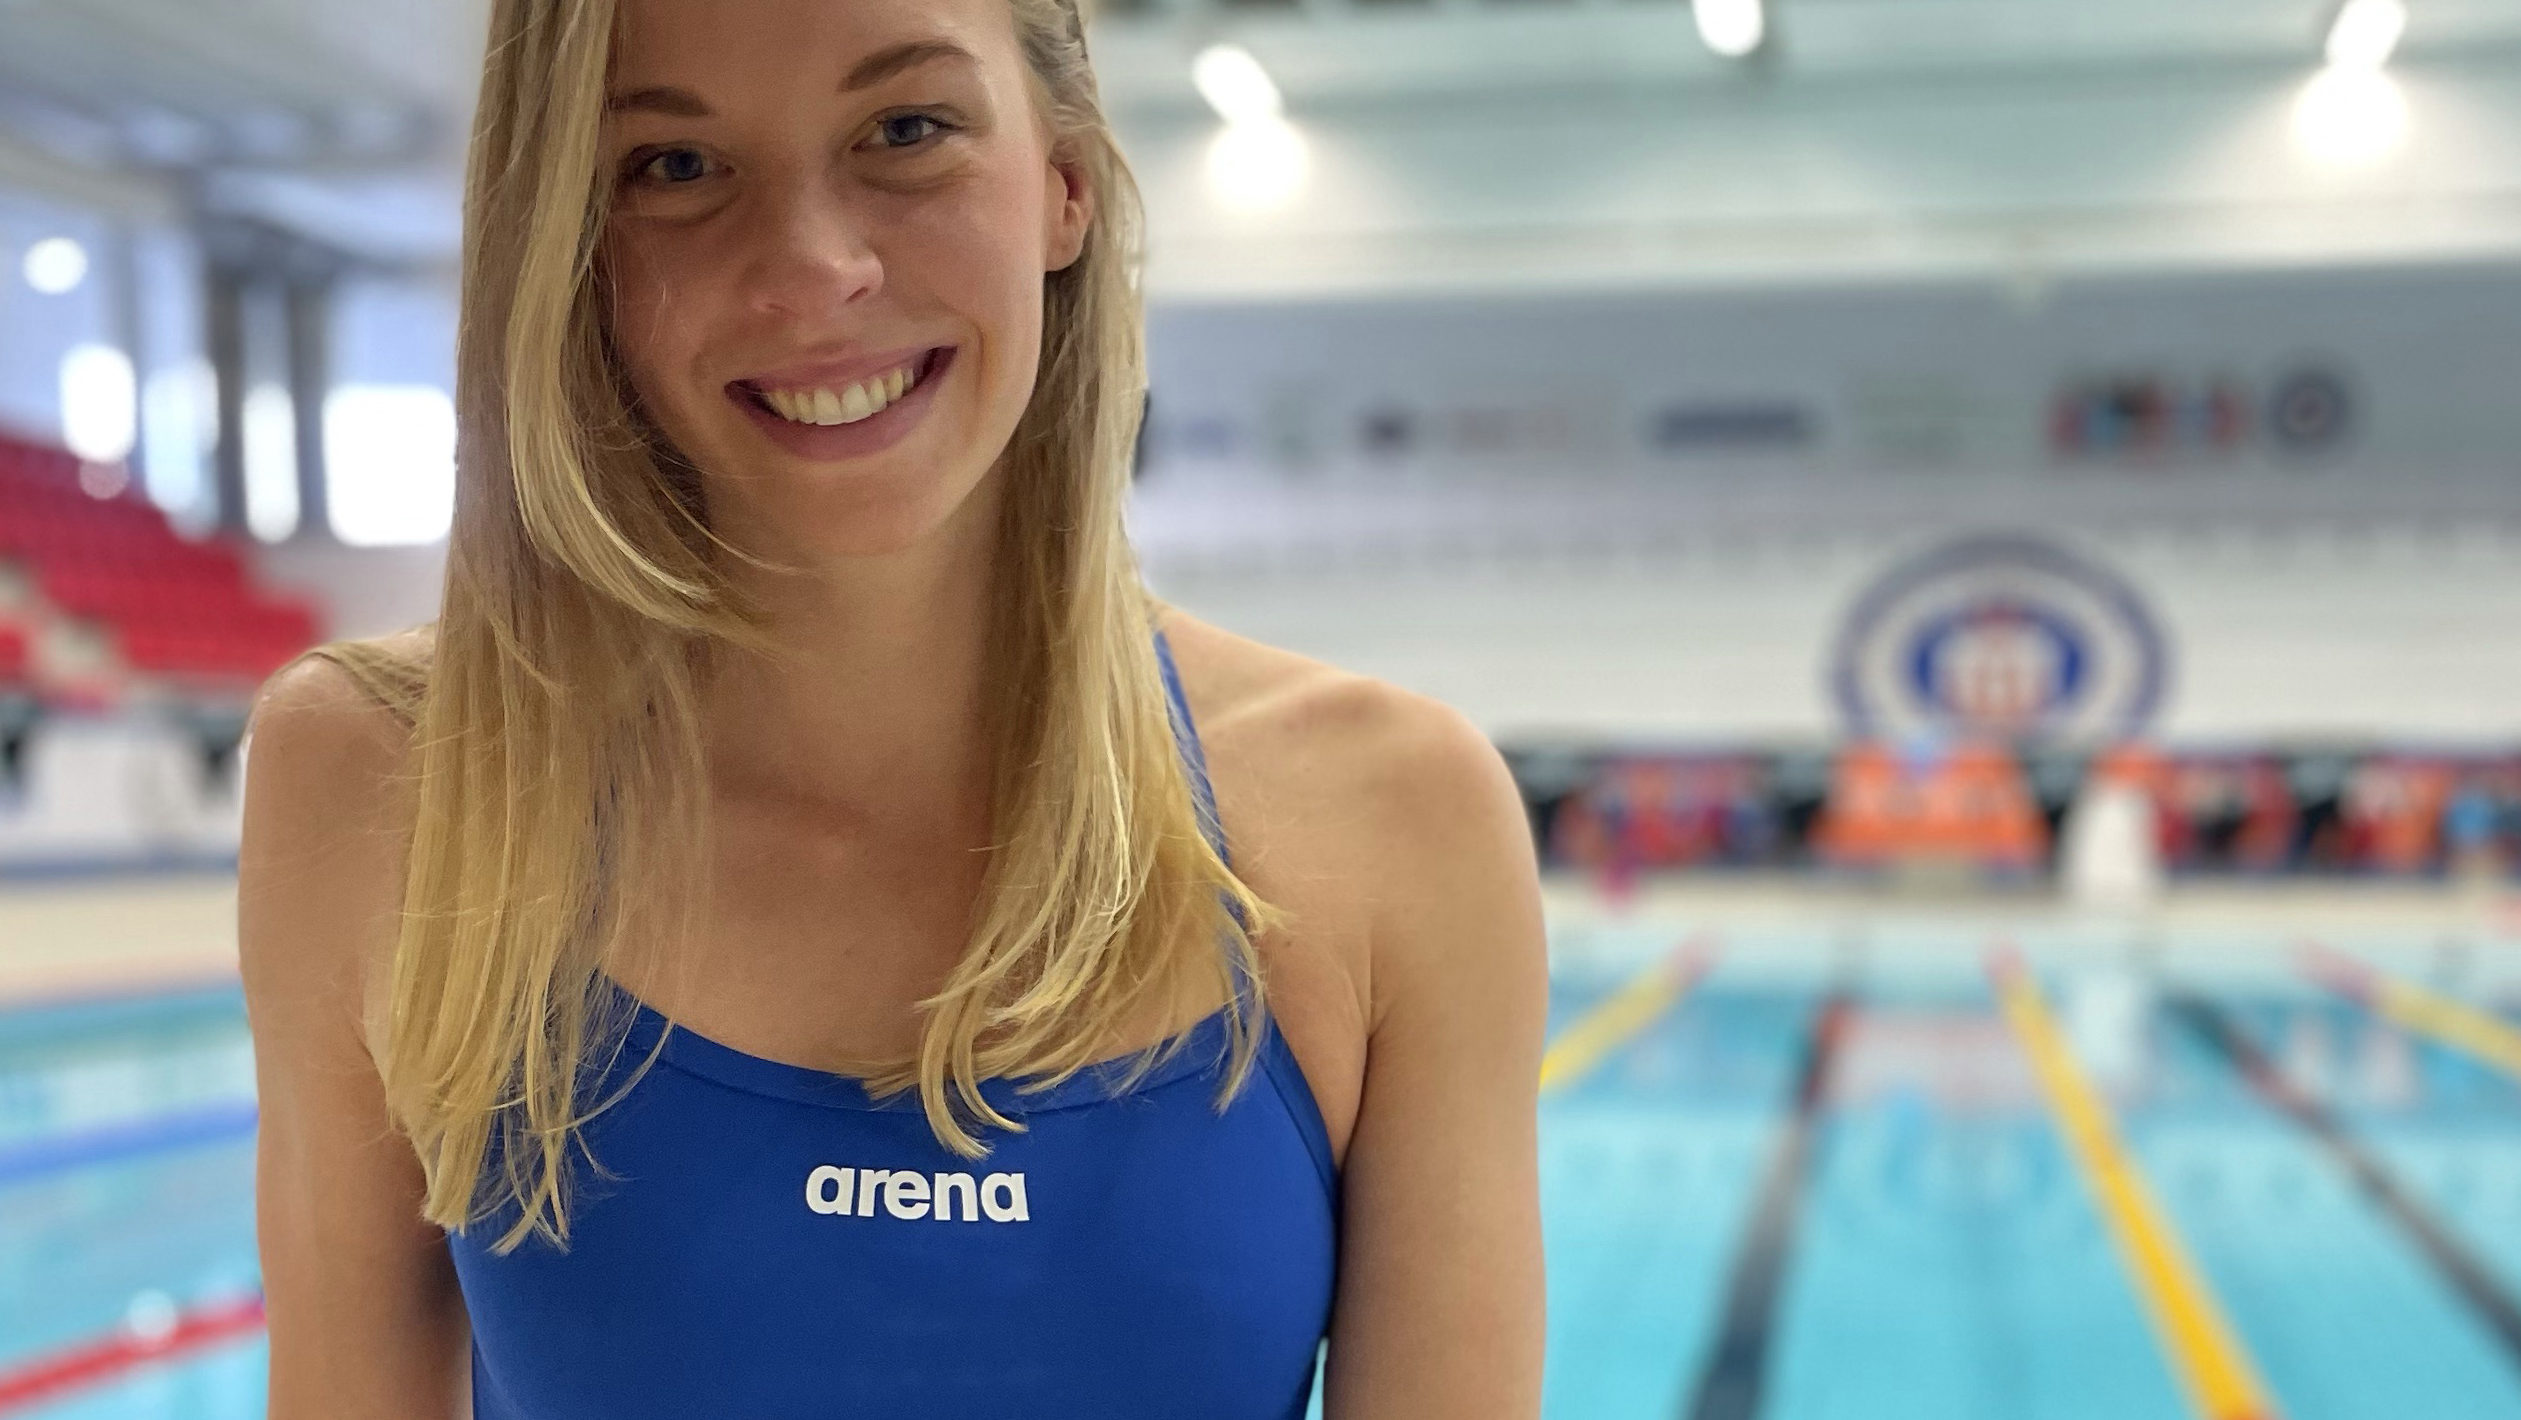 Scopri di più sull'articolo arena firma Louise Hansson svedese campionessa mondiale di vasca corta